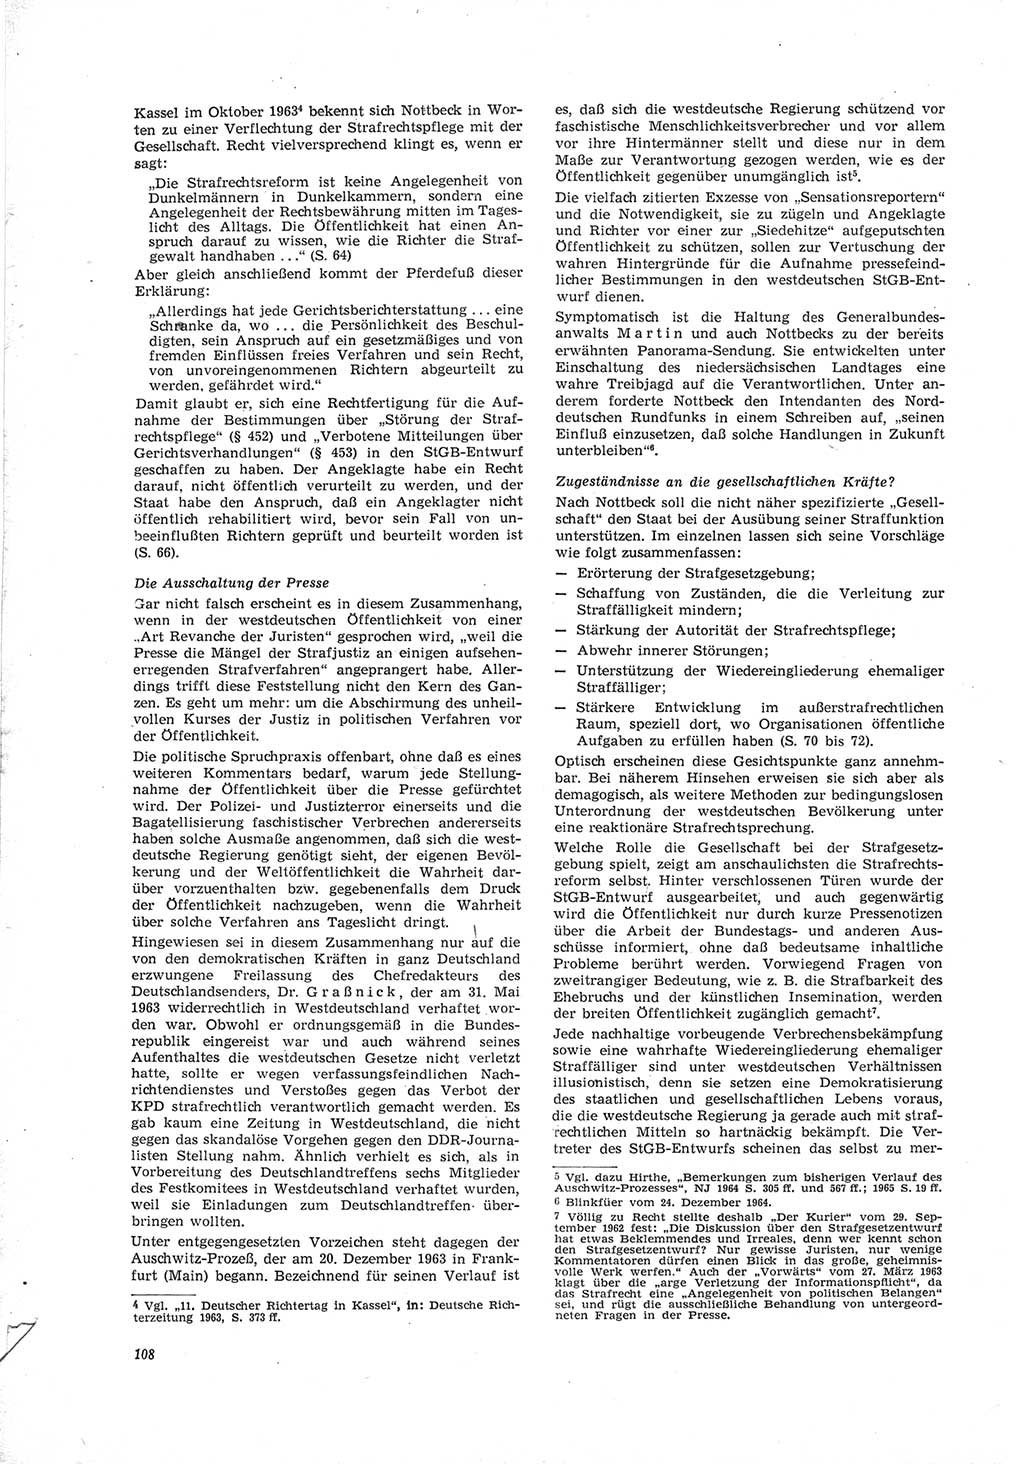 Neue Justiz (NJ), Zeitschrift für Recht und Rechtswissenschaft [Deutsche Demokratische Republik (DDR)], 19. Jahrgang 1965, Seite 108 (NJ DDR 1965, S. 108)